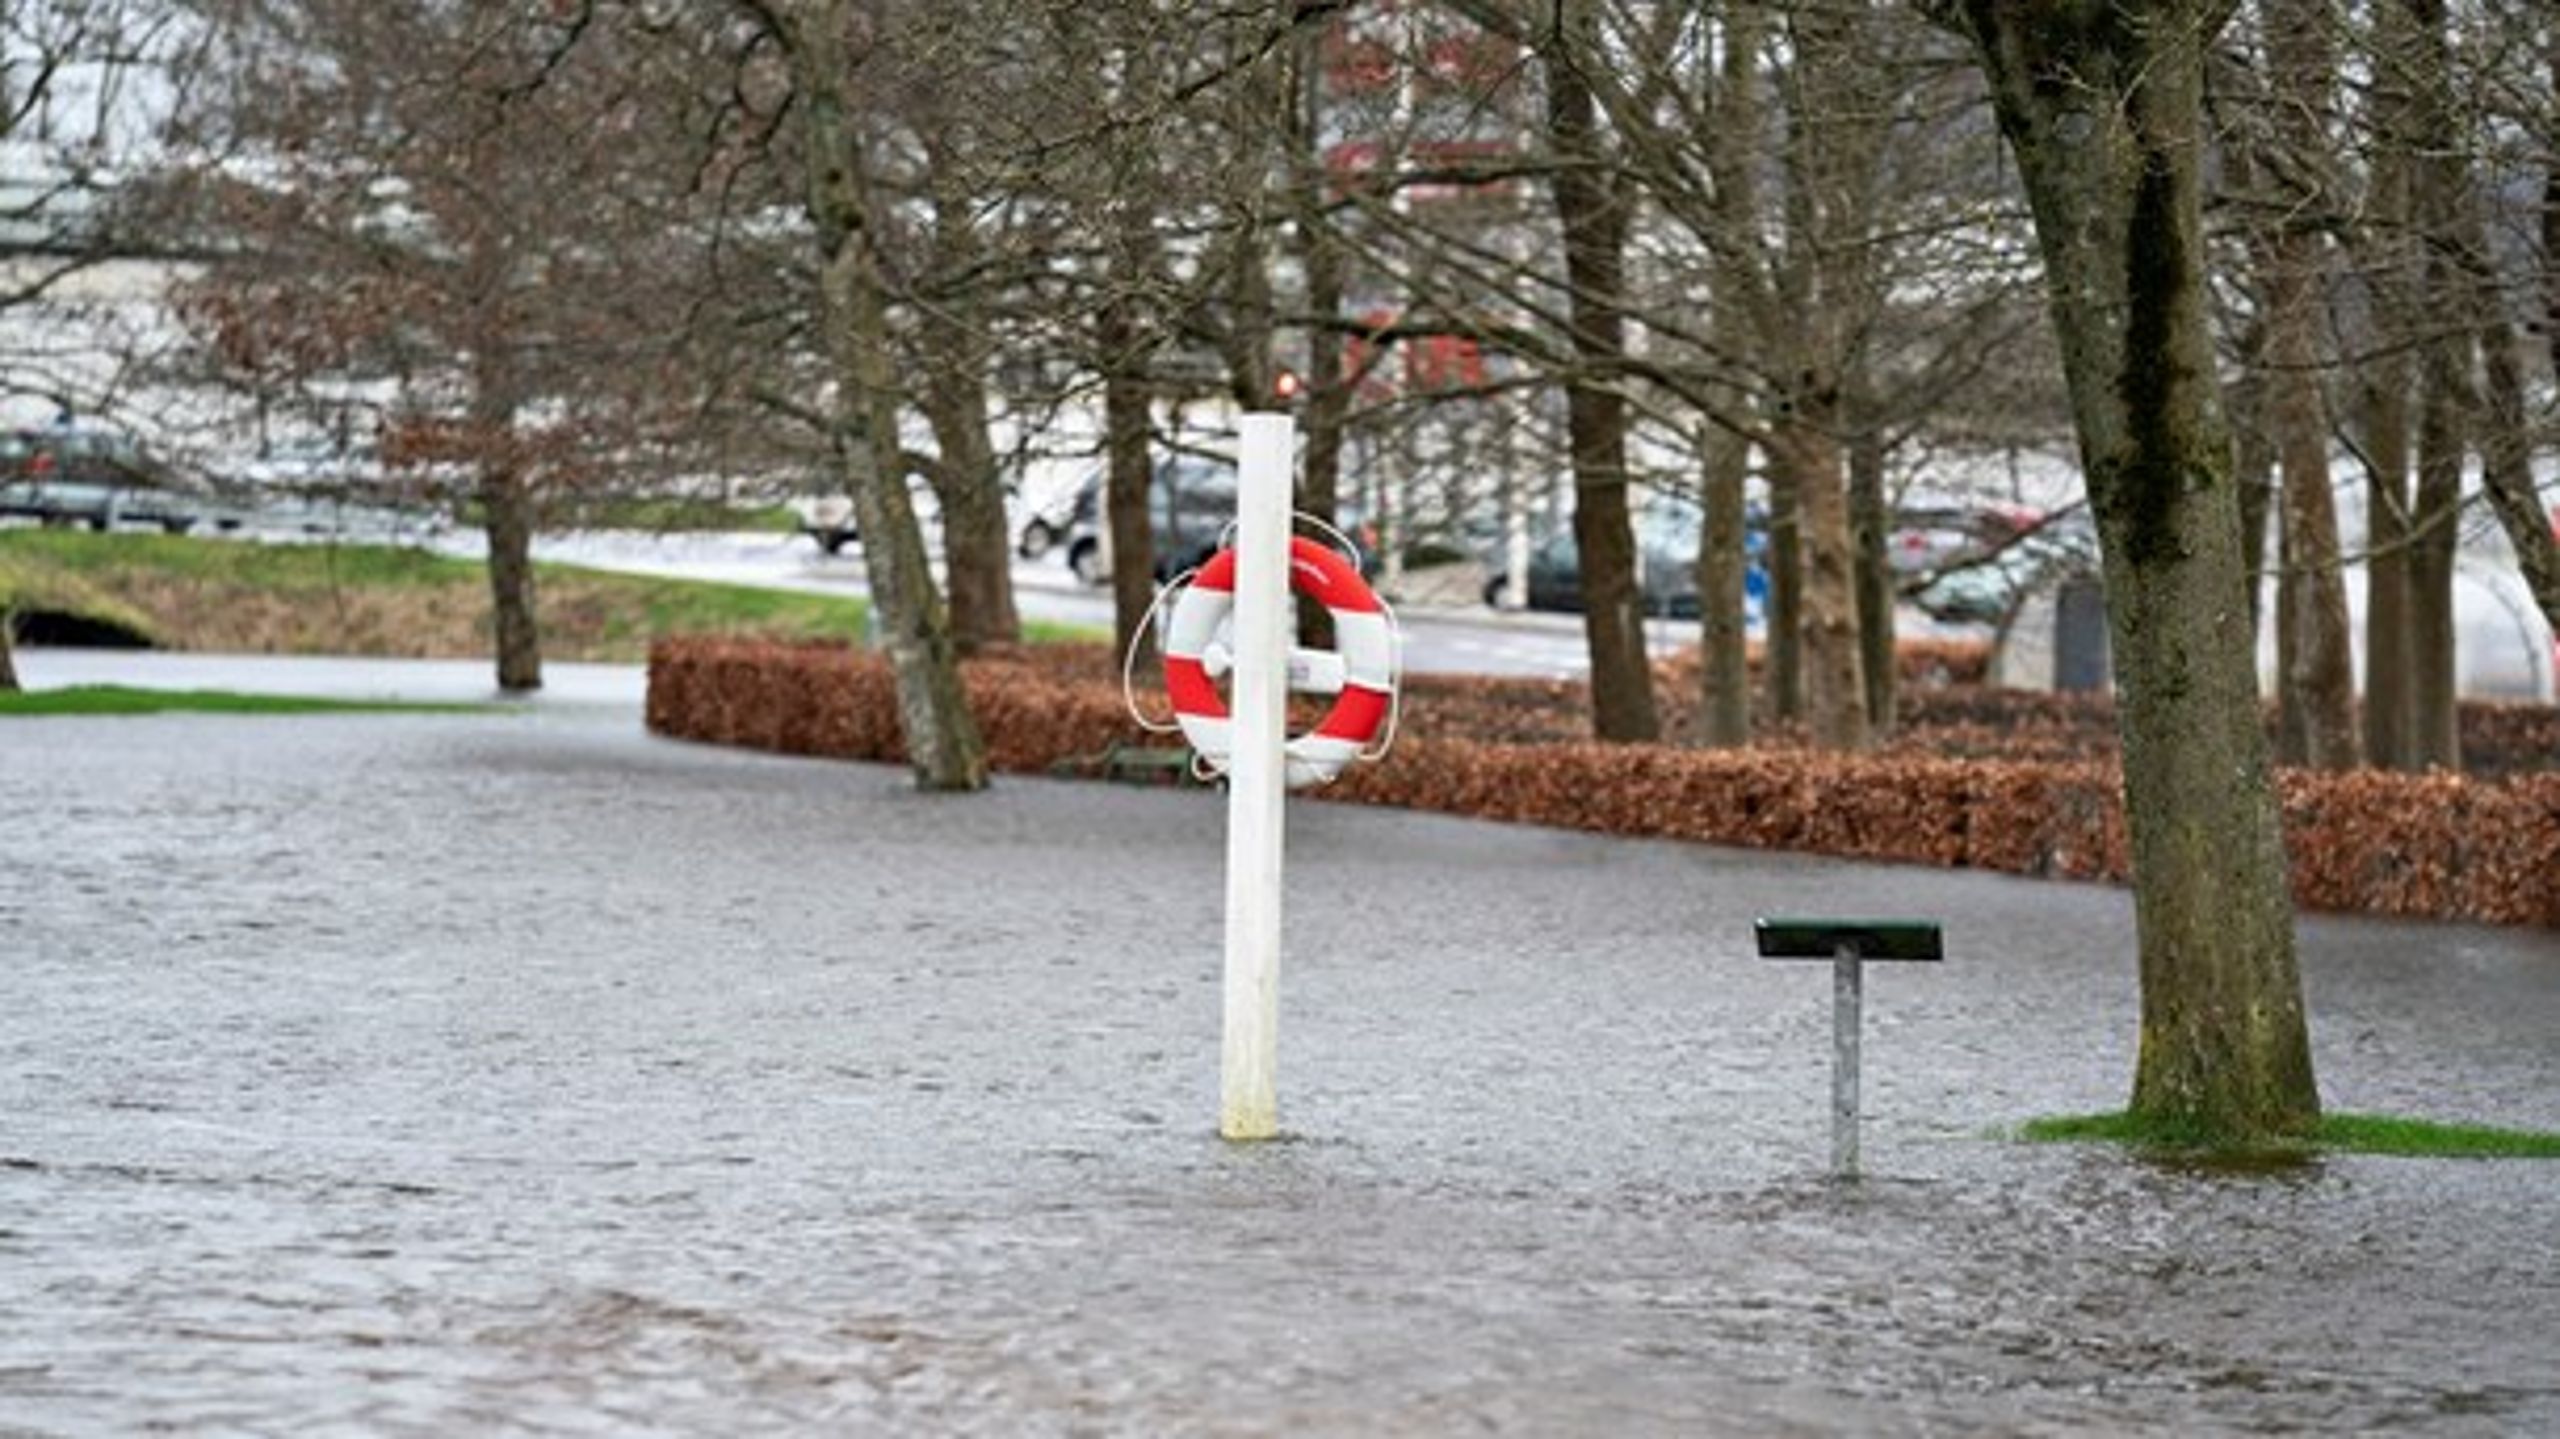 En af de største udfordringer bliver mere vand. Det fik danskerne set prøver på tidligere i år, hvor flere byer stod under vand efter massiv regn, skriver DMI's vicedirektør.